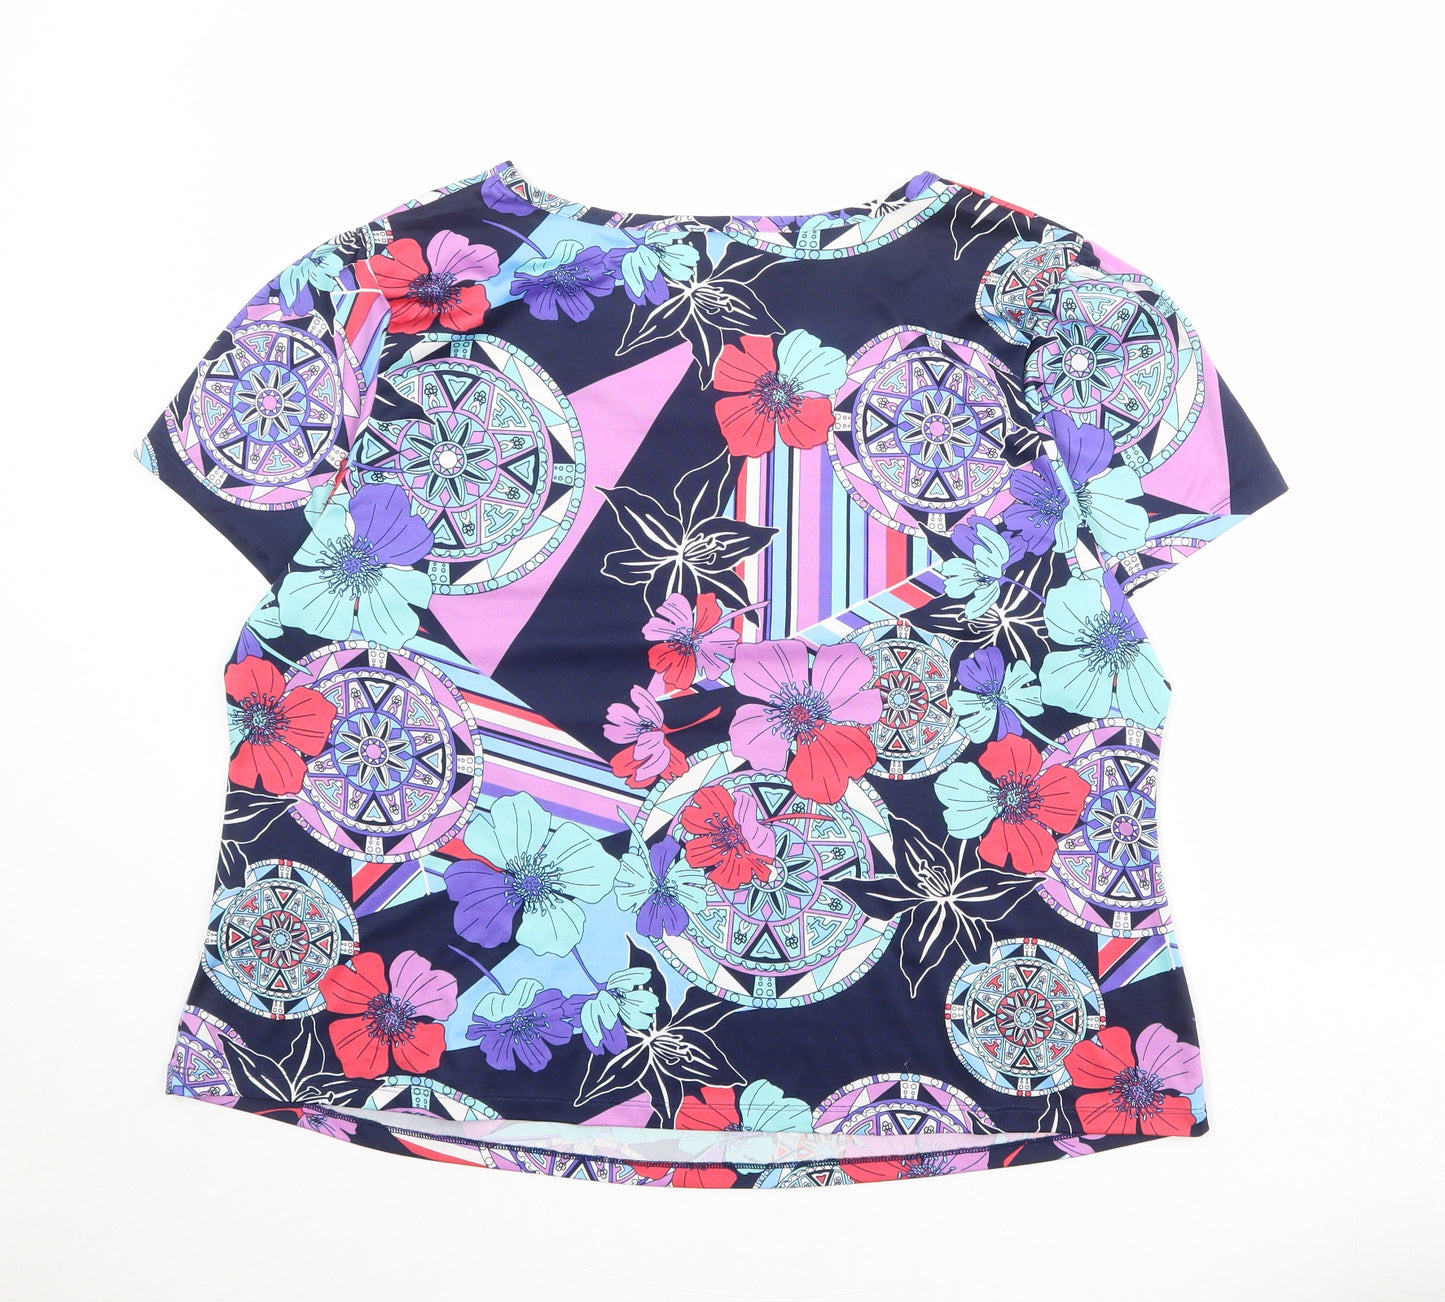 Nightingales Womens Multicoloured Geometric Polyester Basic T-Shirt Size 22 Boat Neck